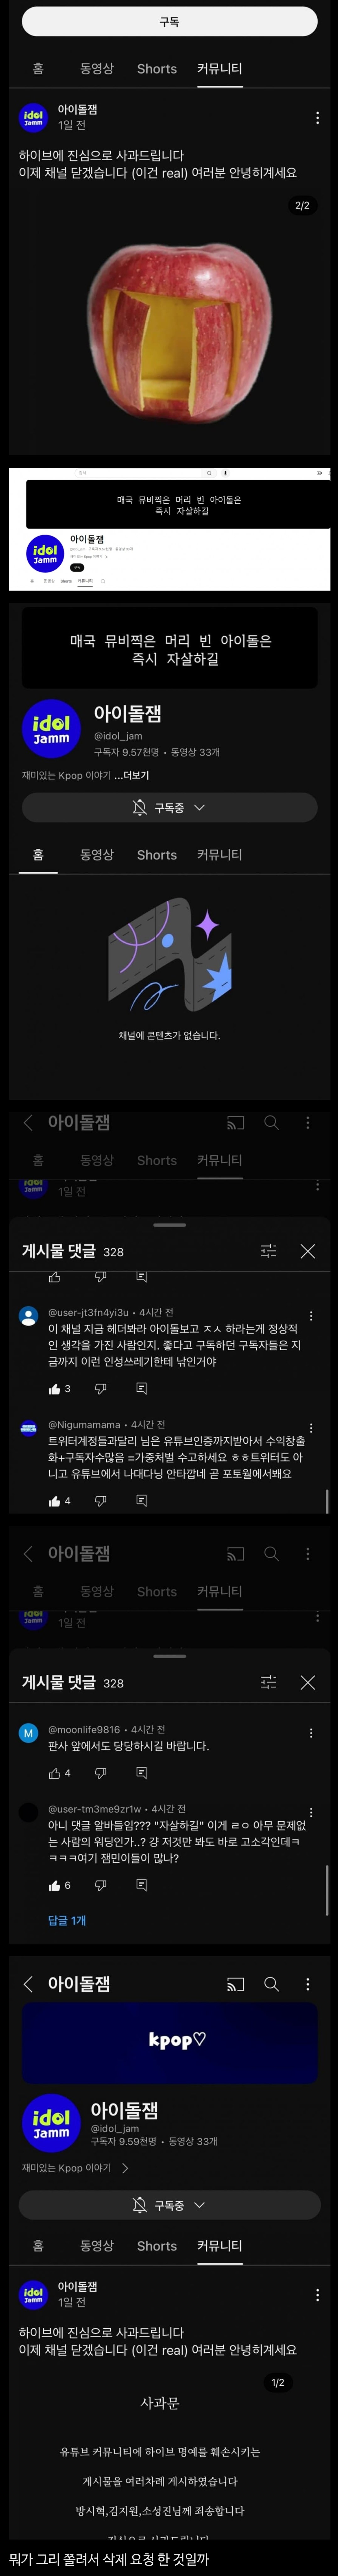 아이돌 보고 자살하라는 아이돌 렉카.jpg